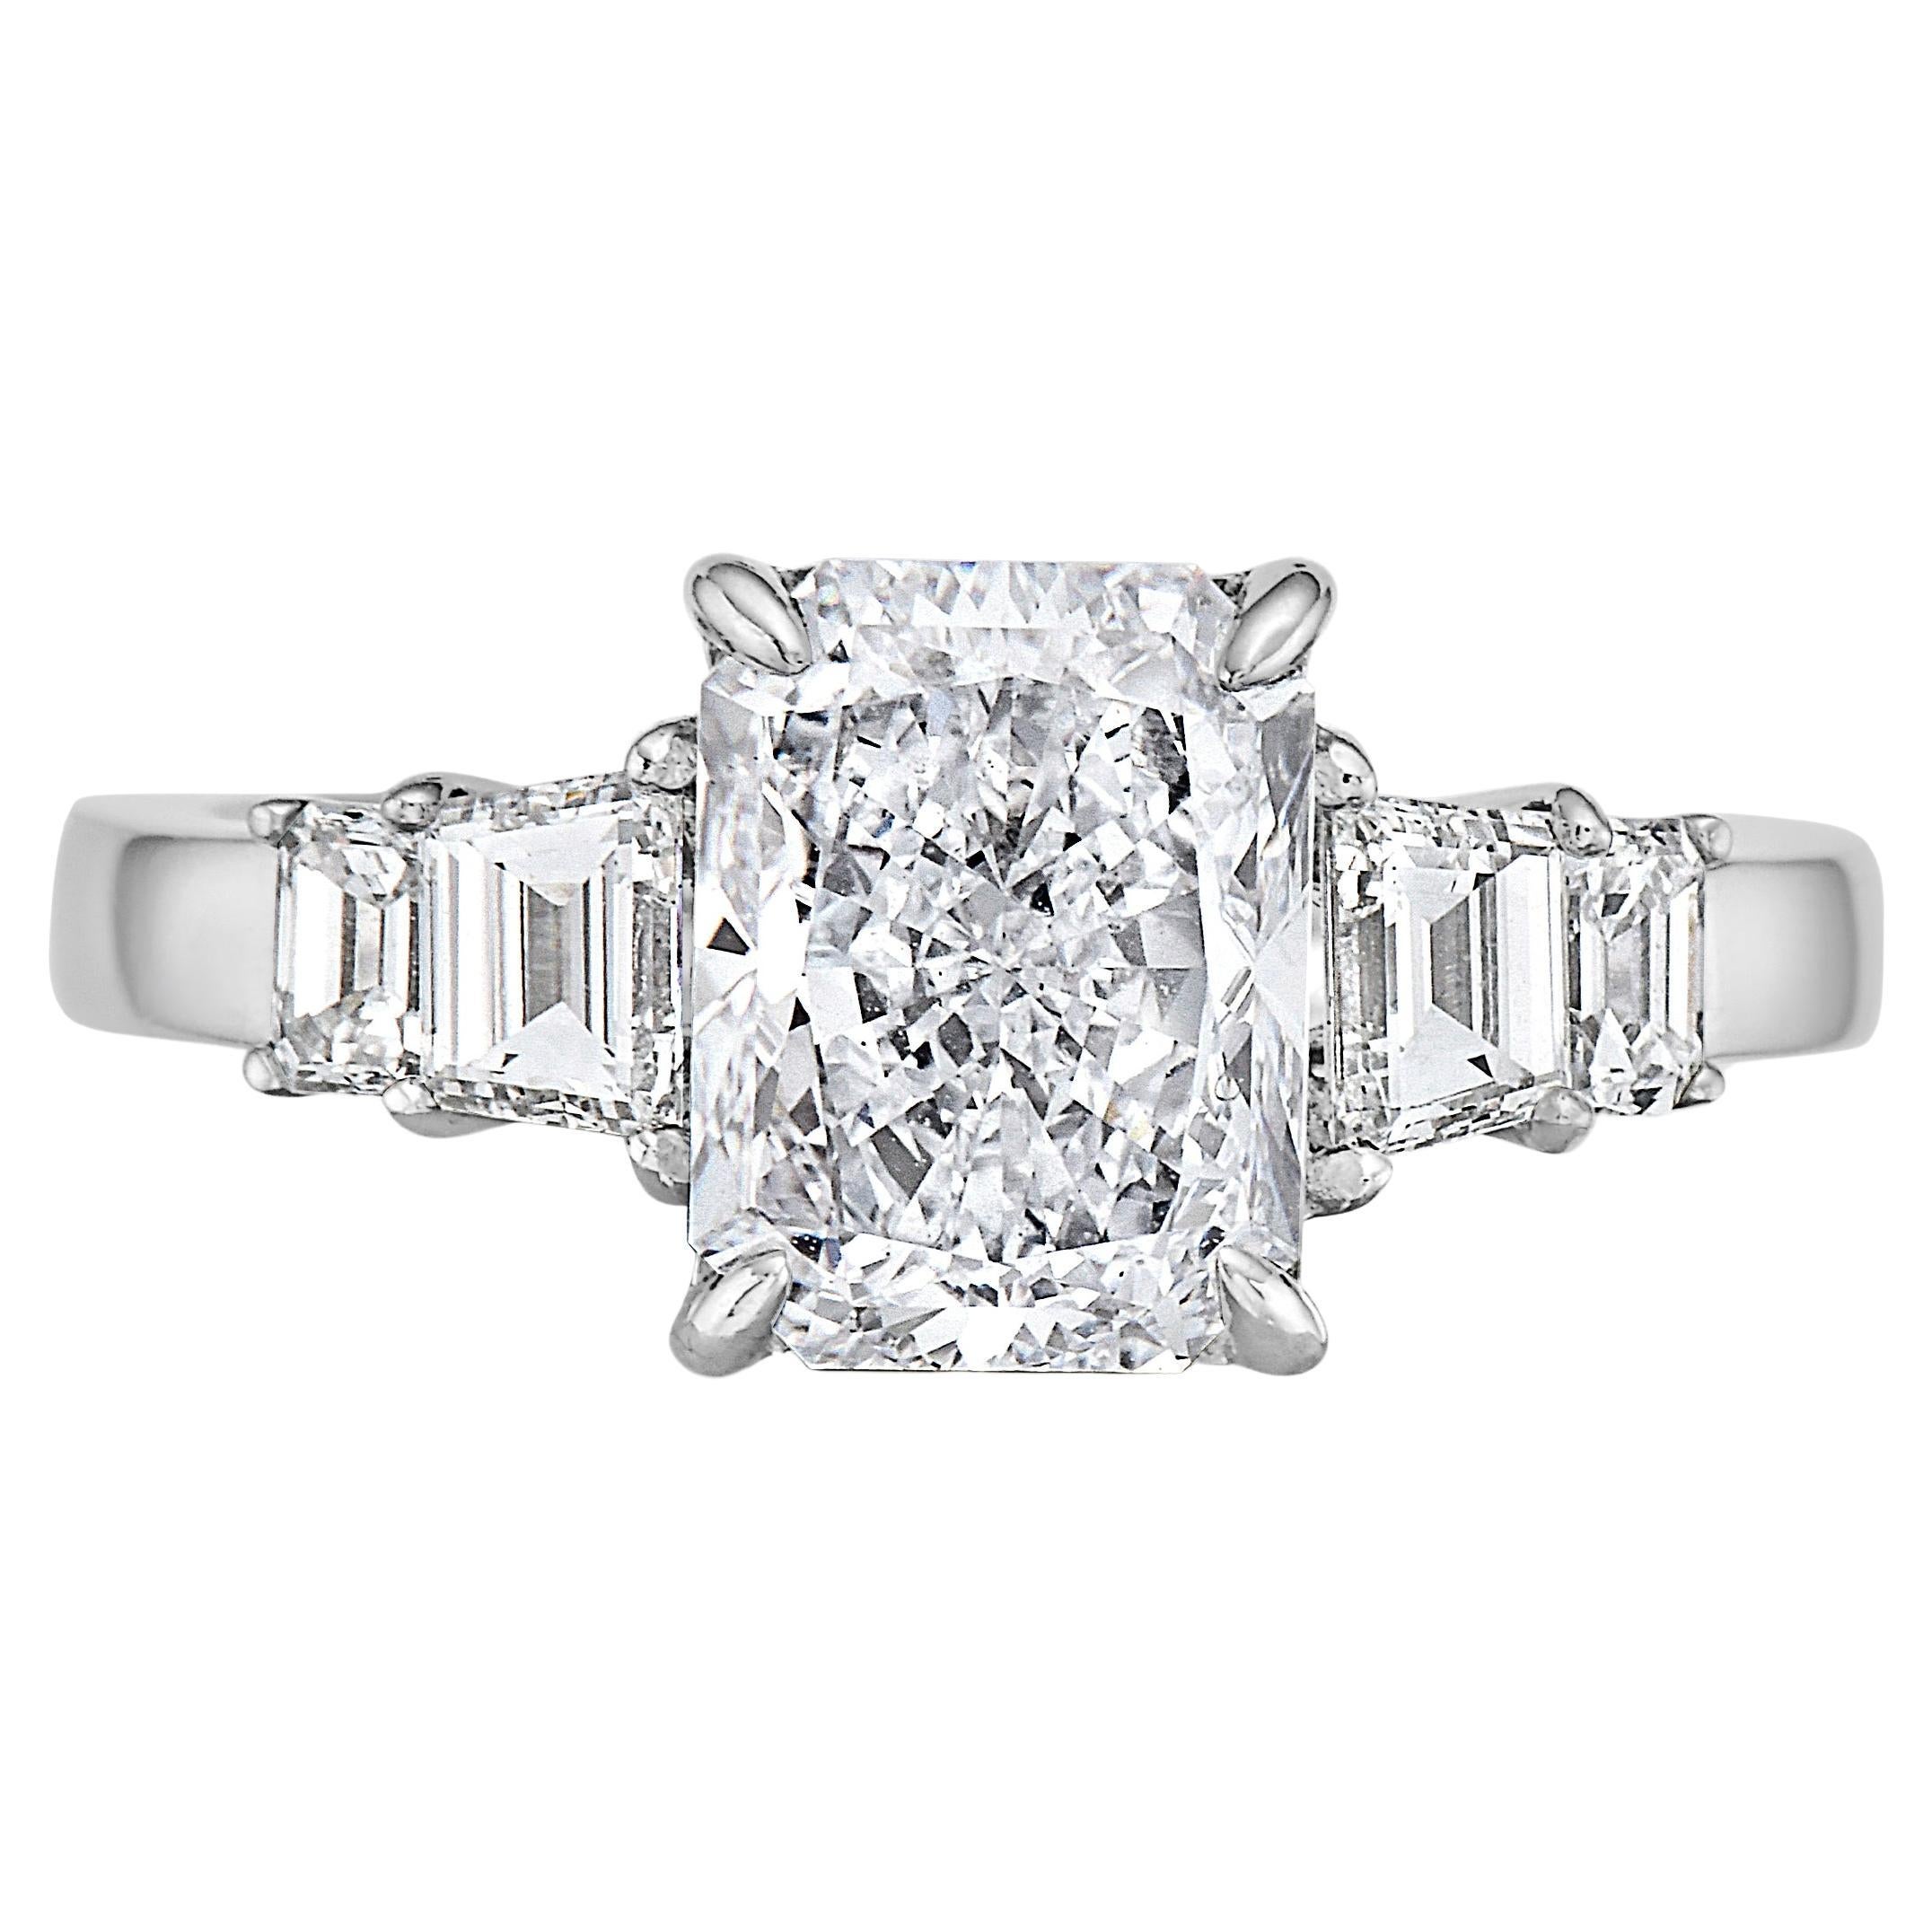 E Diamond Cut VVS1 And White Diamond 18k White Gold Ring - GIA: 6204562589